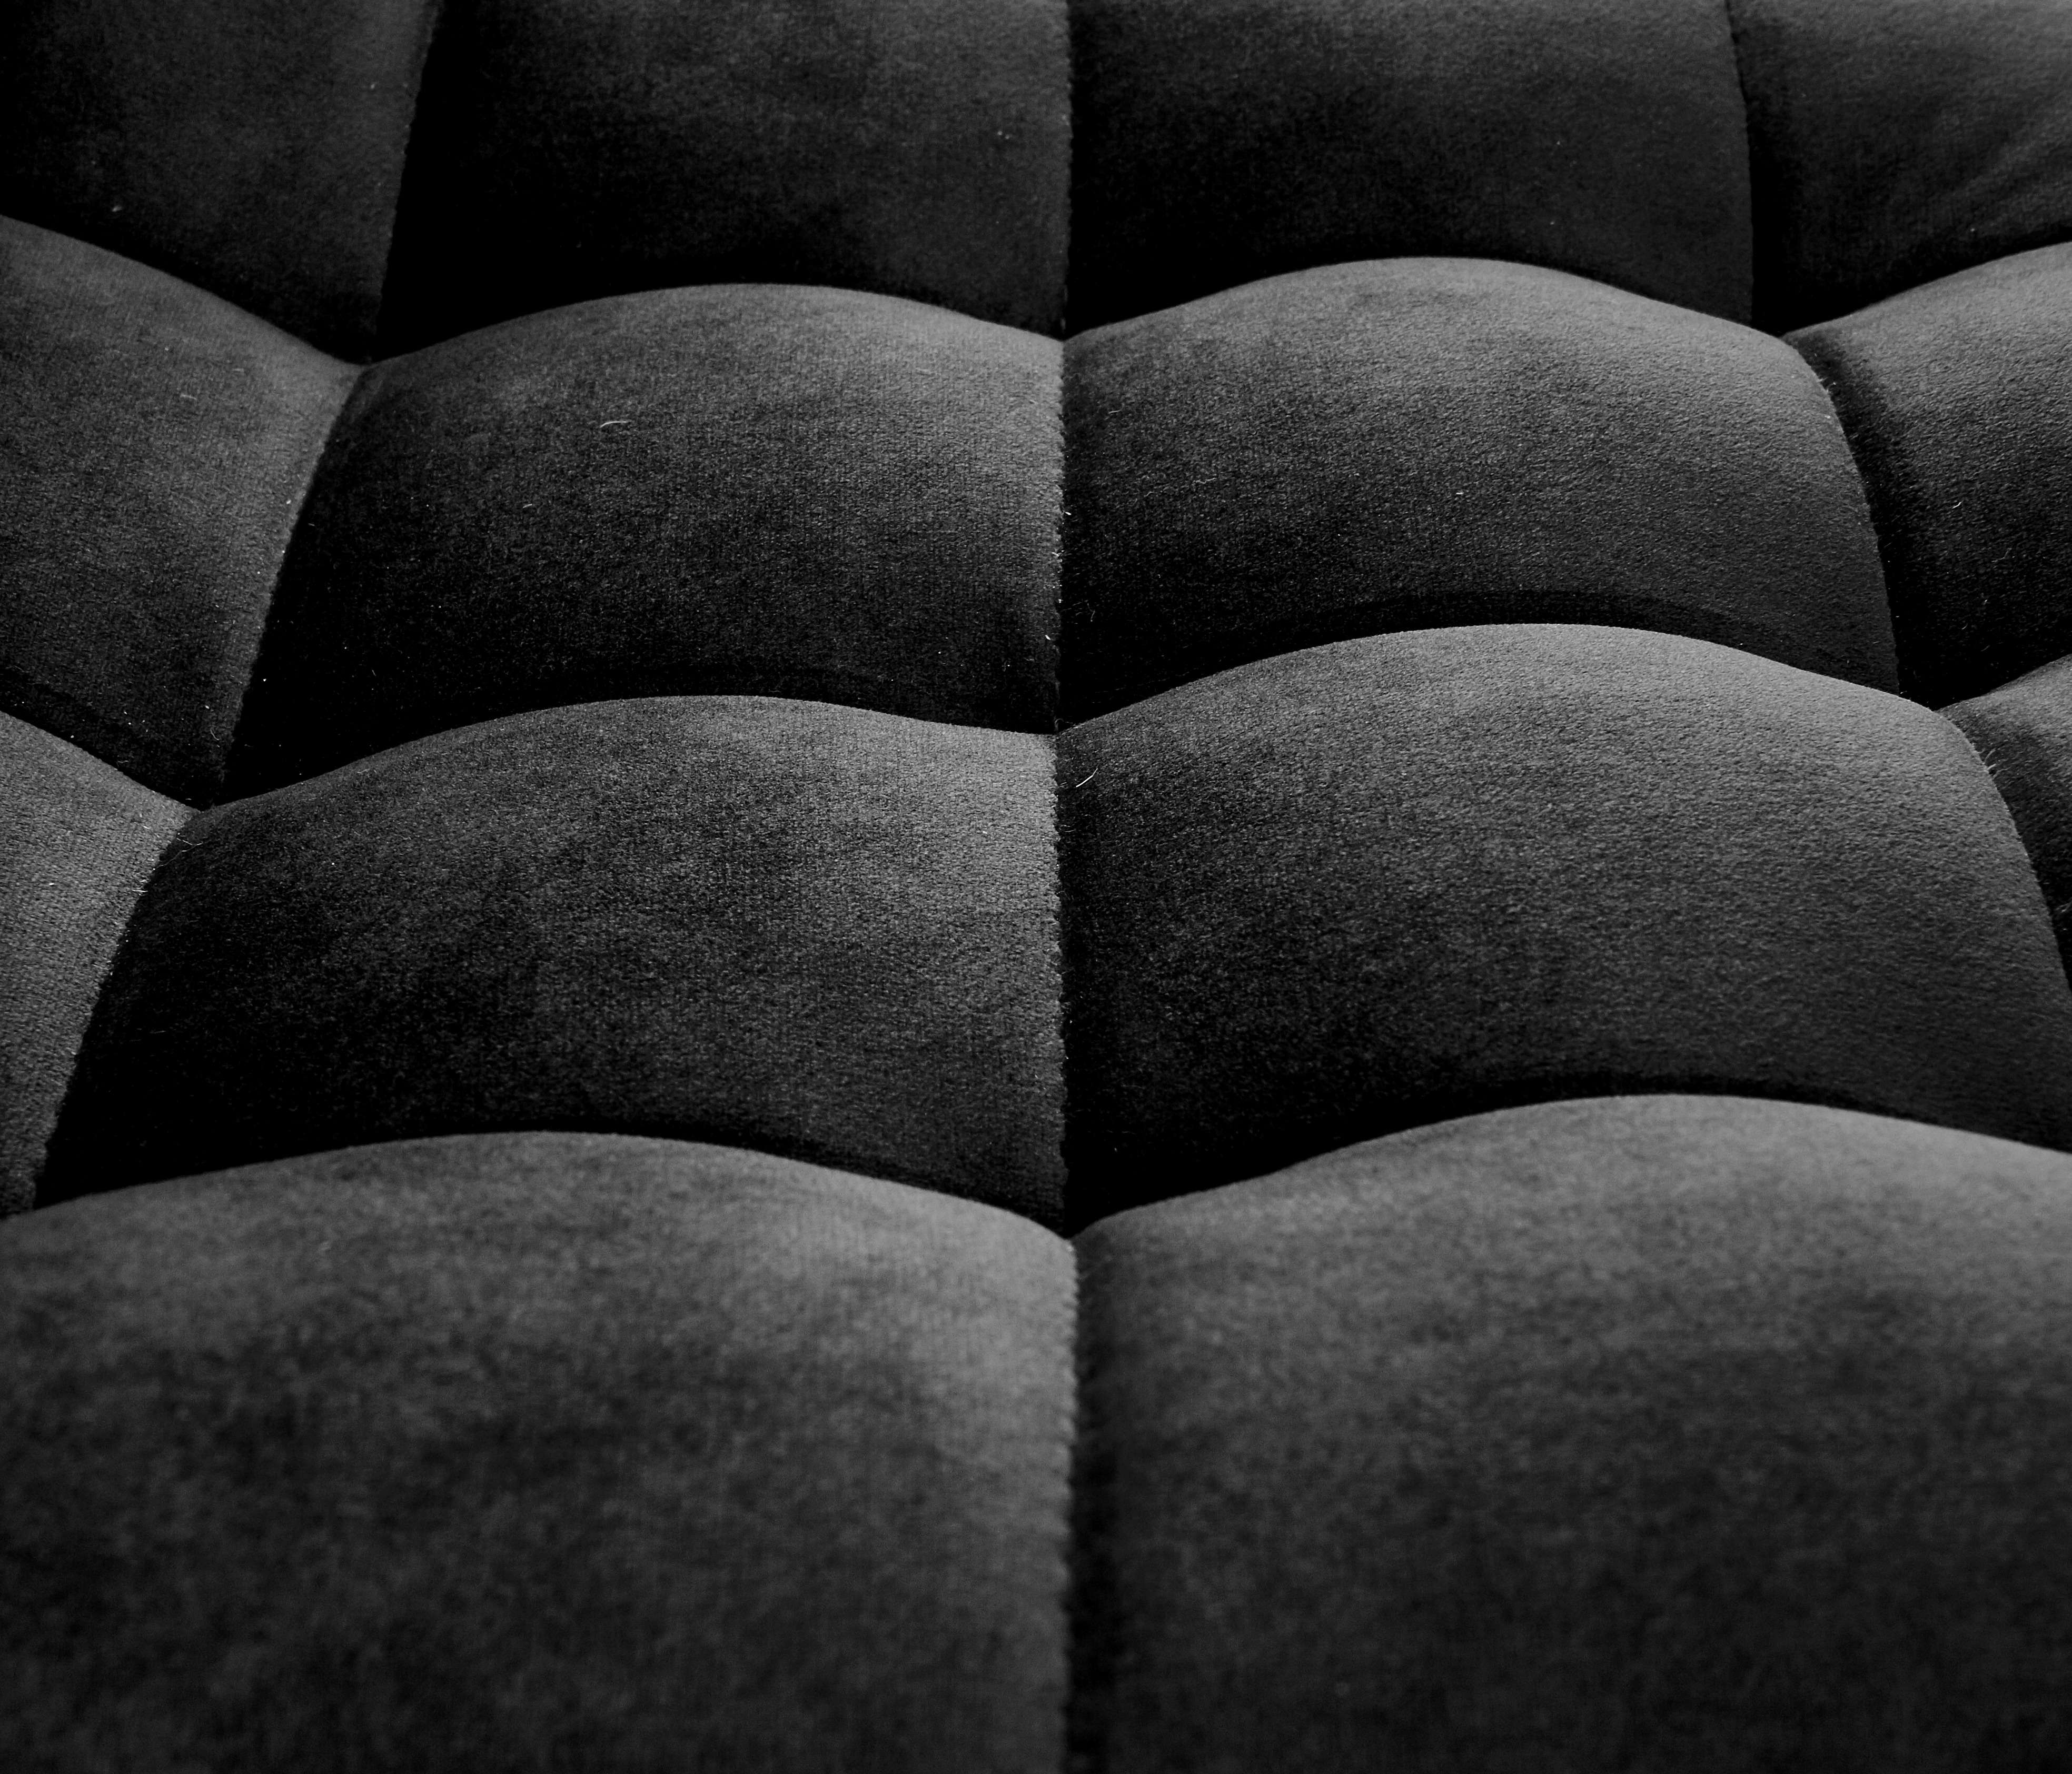 H95 Barová židle Černý (1p=1szt) h95 Barová židle Černý